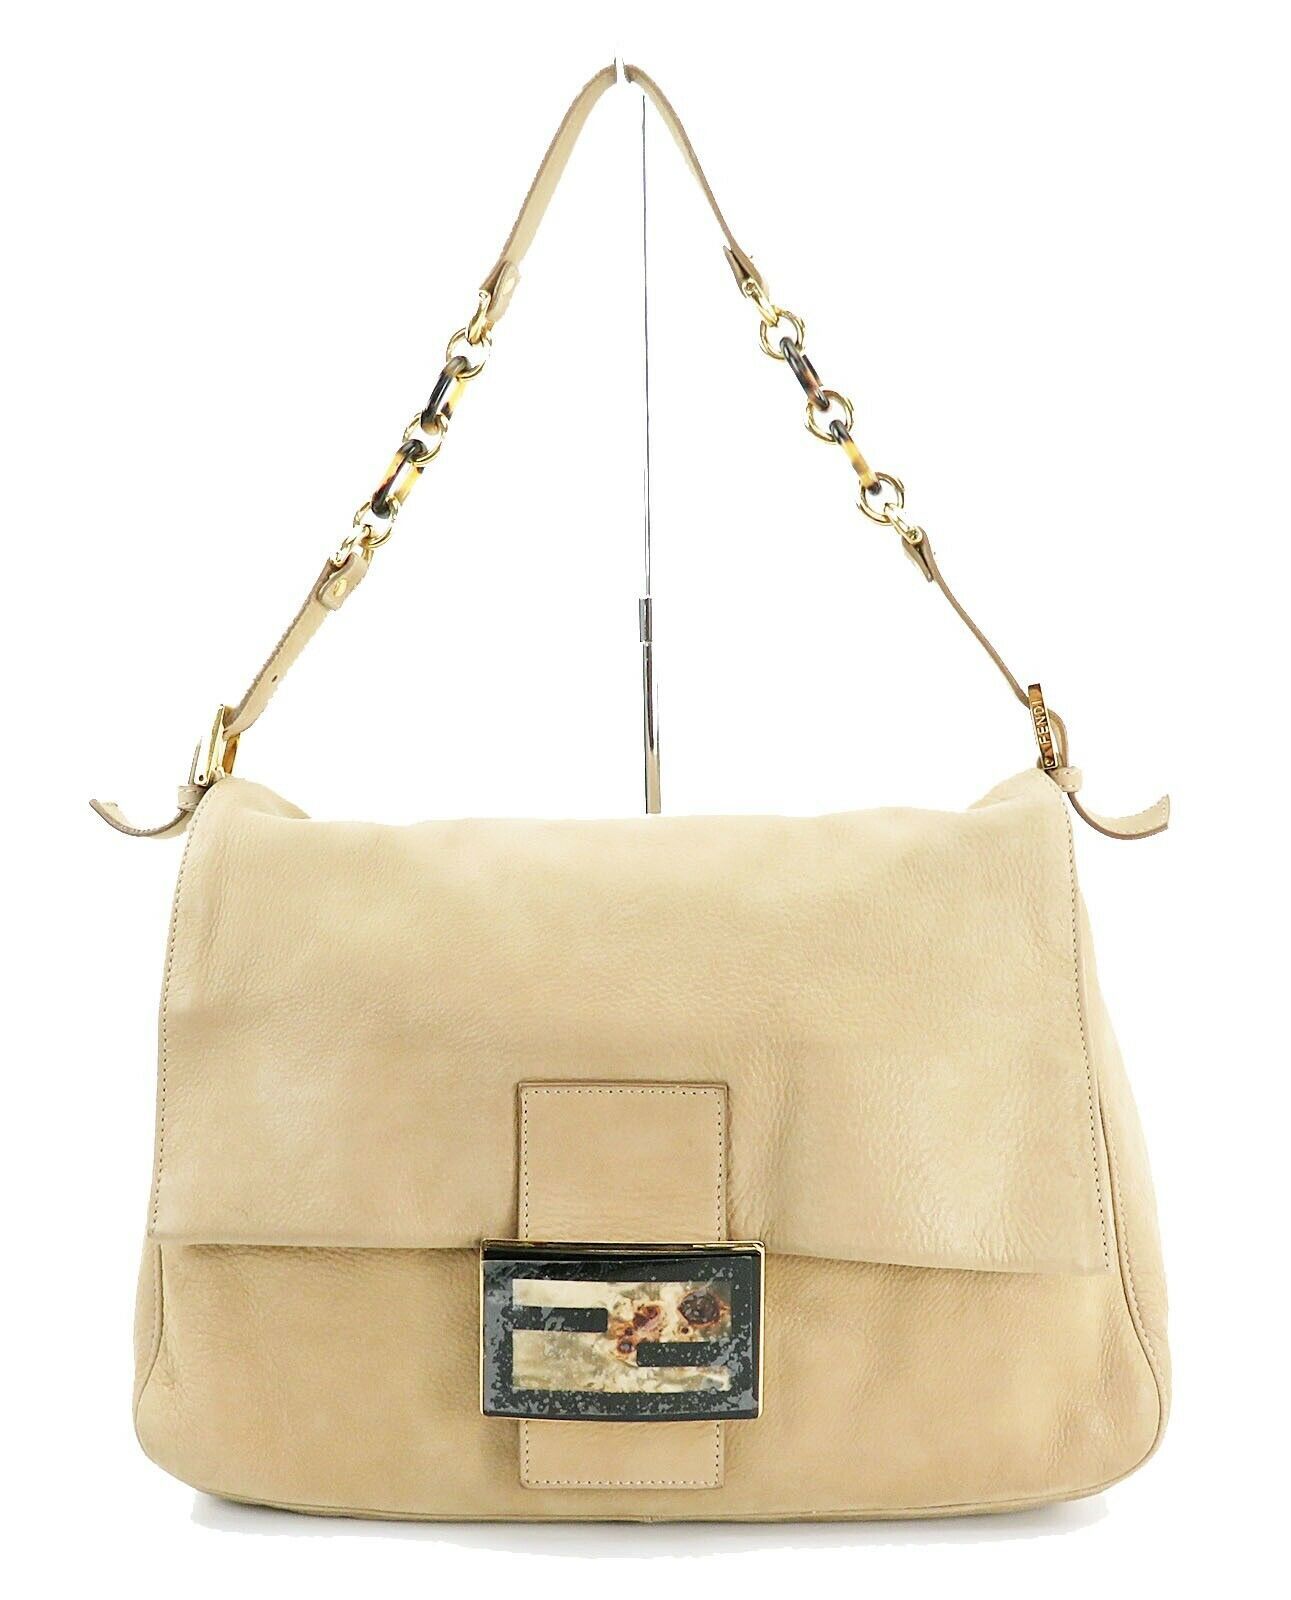 Authentic FENDI Beige Leather Chain Hand Shoulder Bag Baguette Purse ...